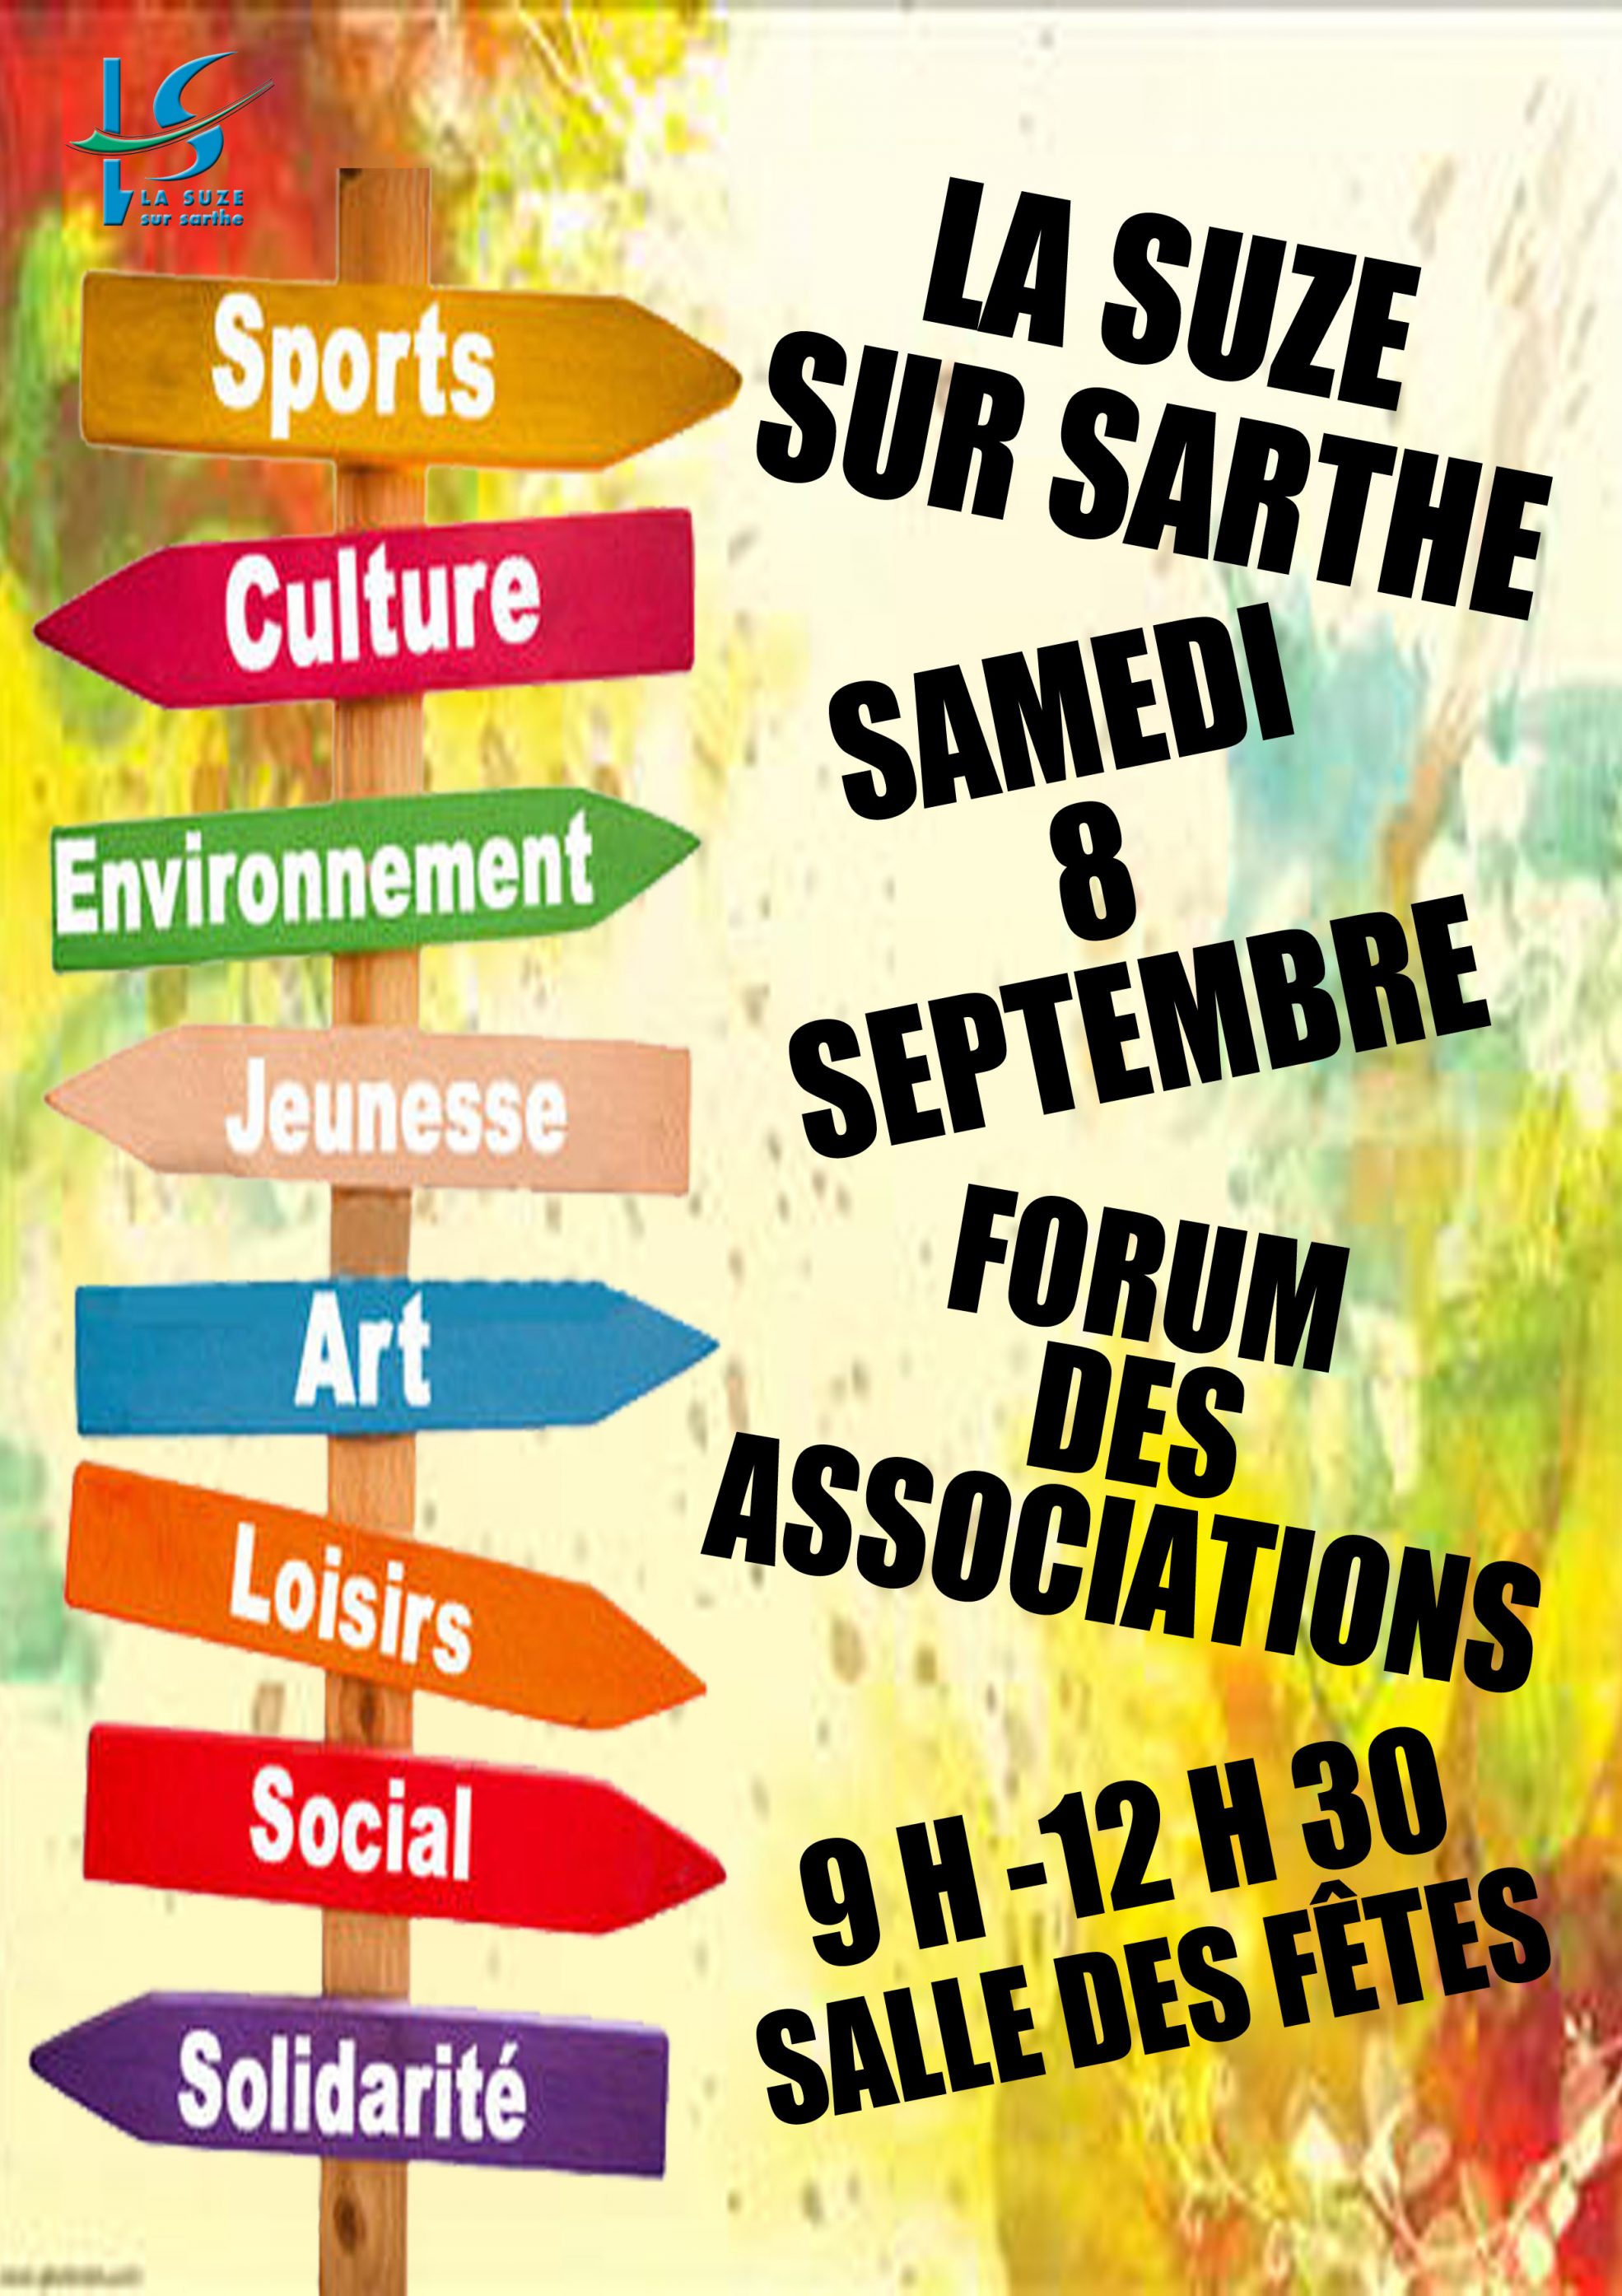 Forum des associations samedi 8 septembre - La Suze sur Sarthe